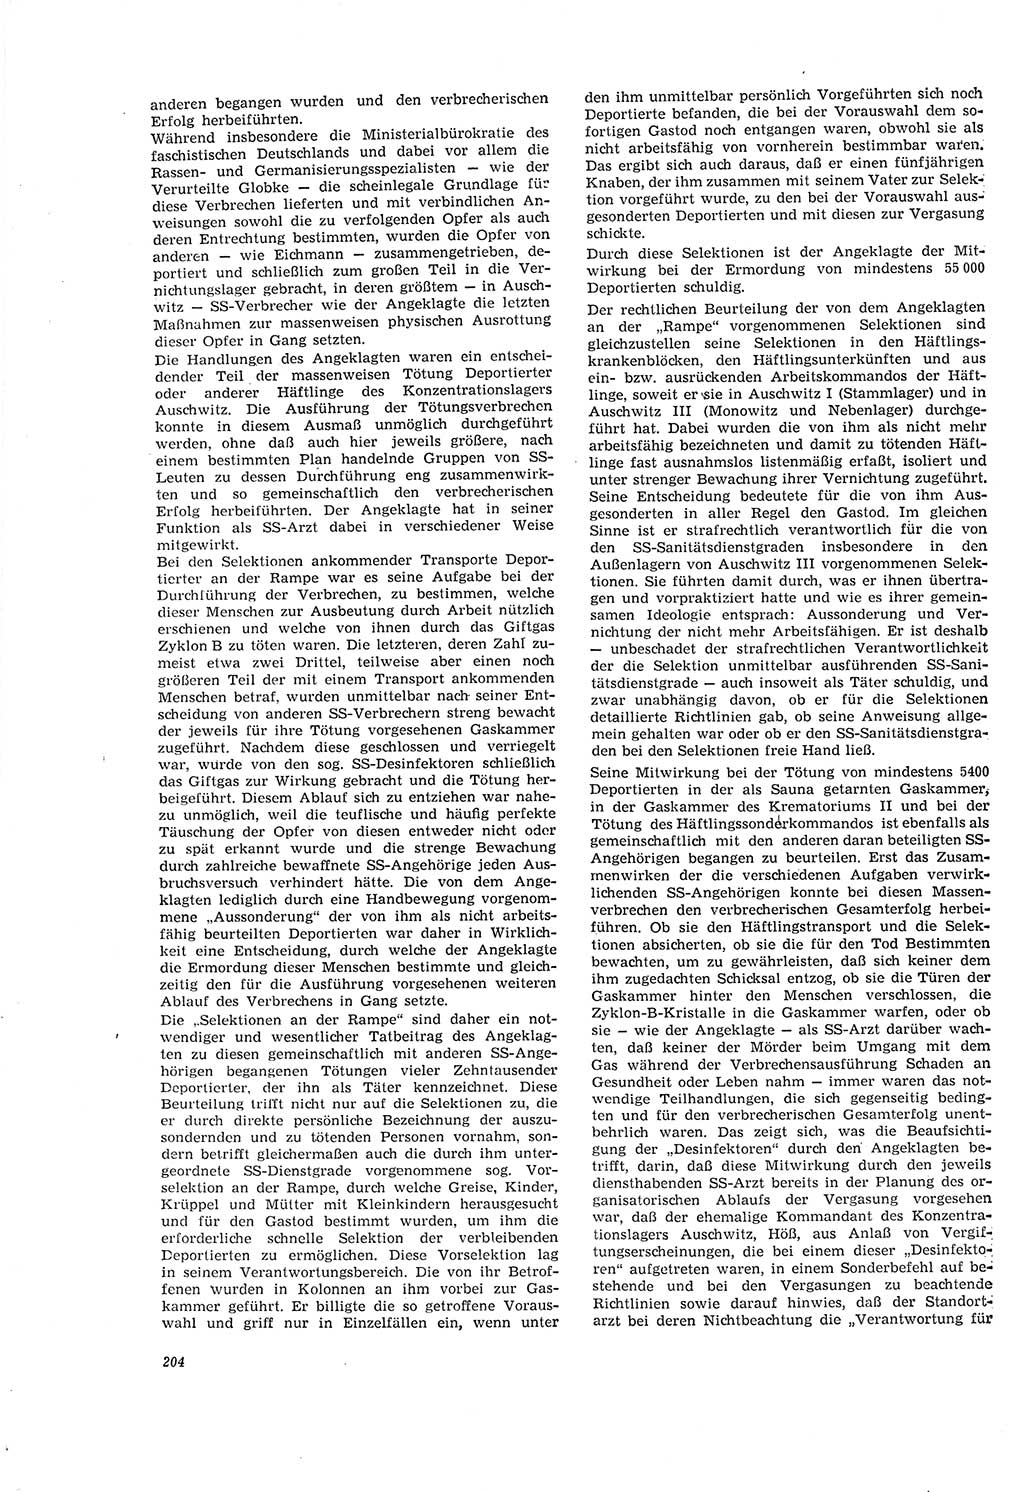 Neue Justiz (NJ), Zeitschrift für Recht und Rechtswissenschaft [Deutsche Demokratische Republik (DDR)], 20. Jahrgang 1966, Seite 204 (NJ DDR 1966, S. 204)